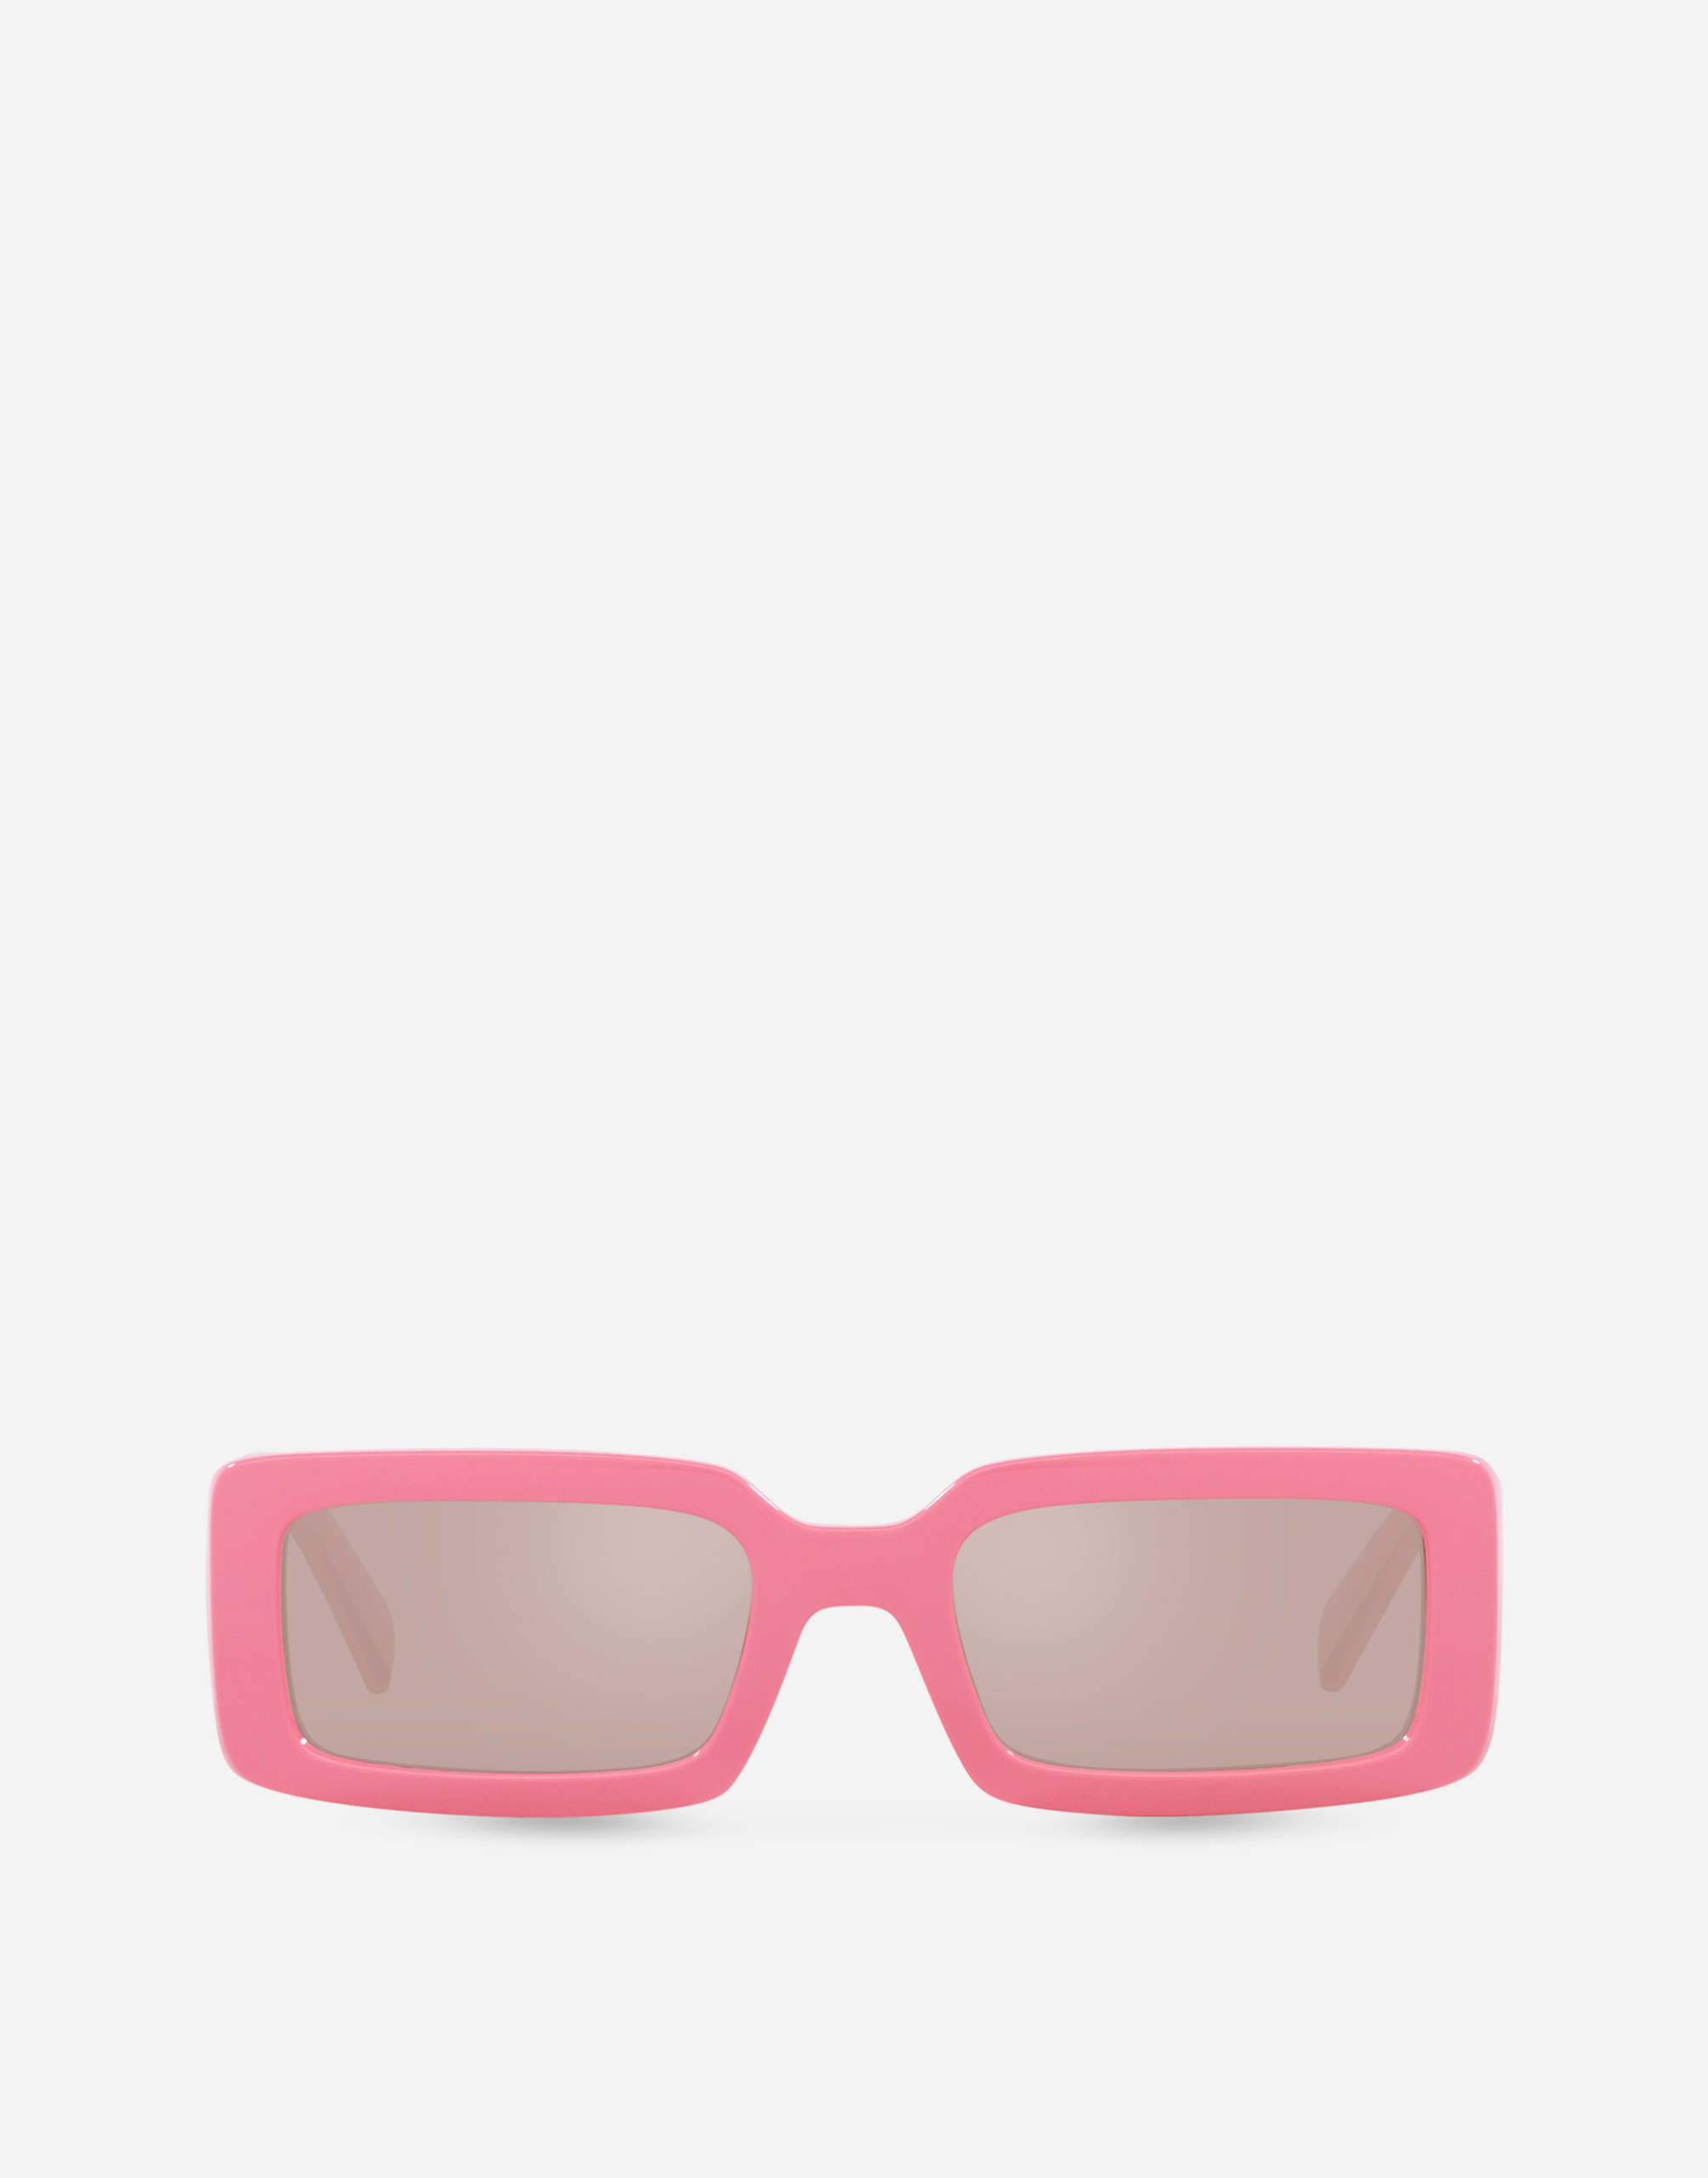 DG Elastic Sunglasses in Pink